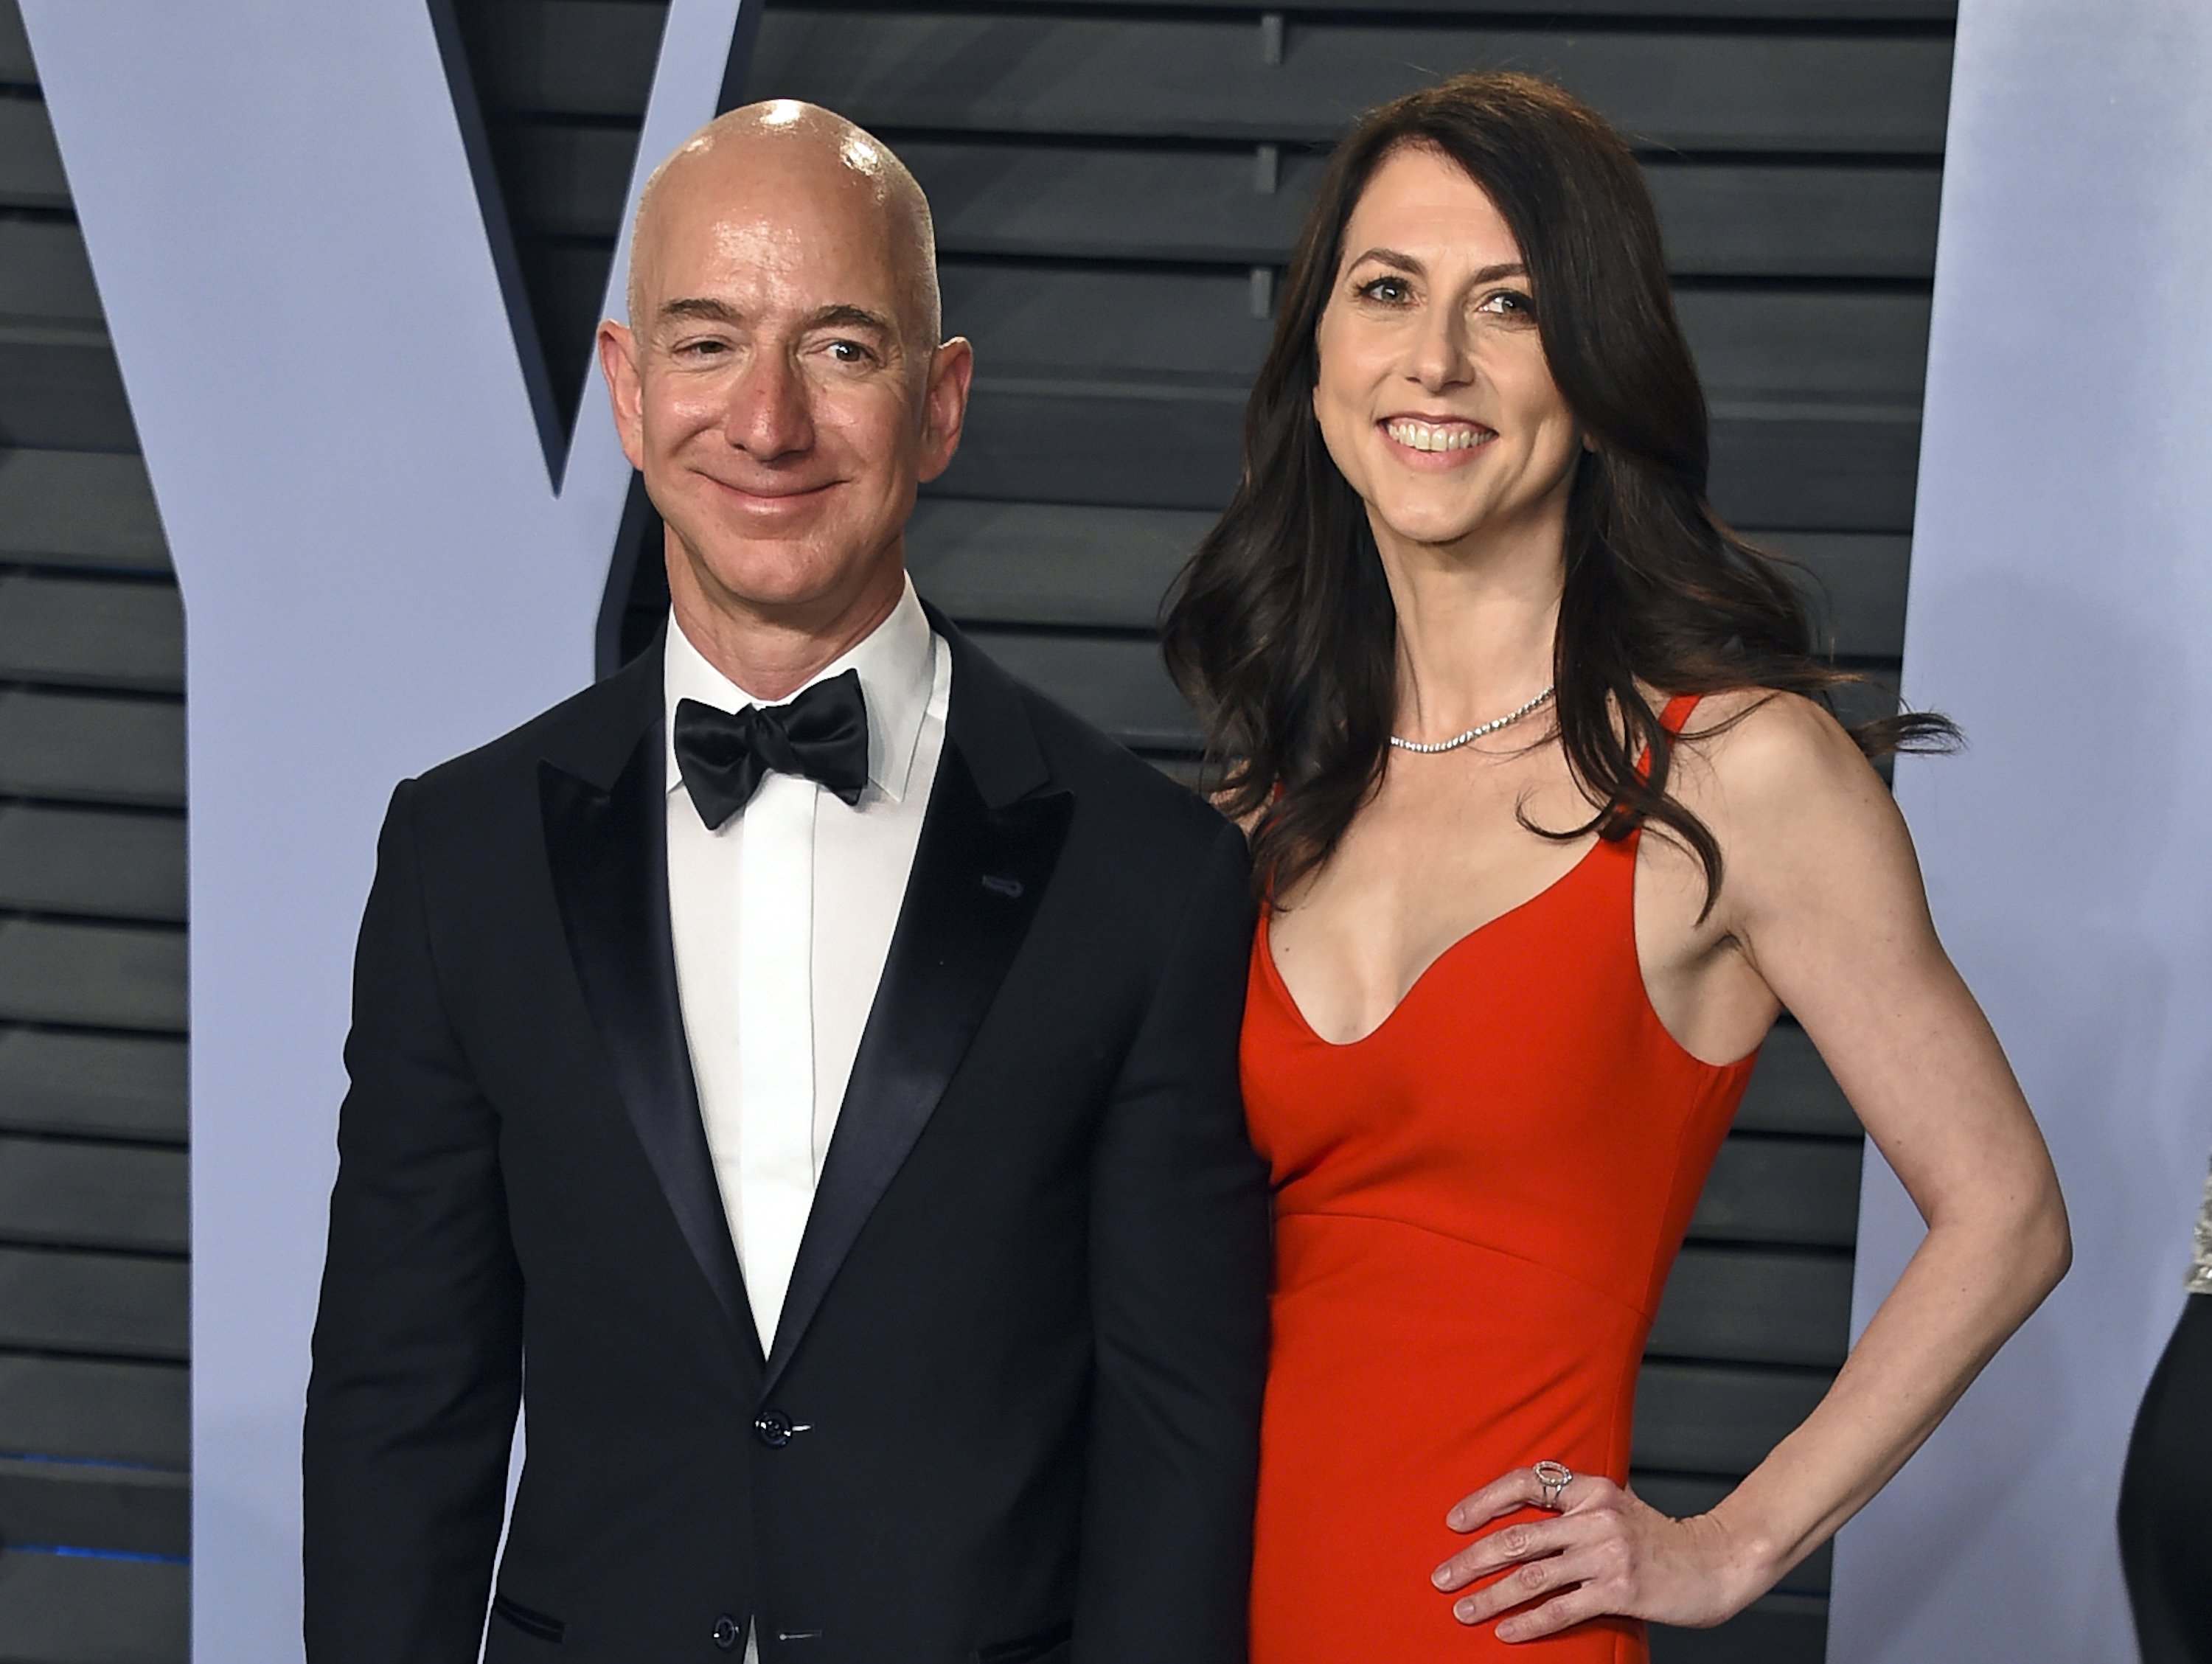 Fundador de Amazon Jeff Bezos y su esposa anuncian divorcio | AP News